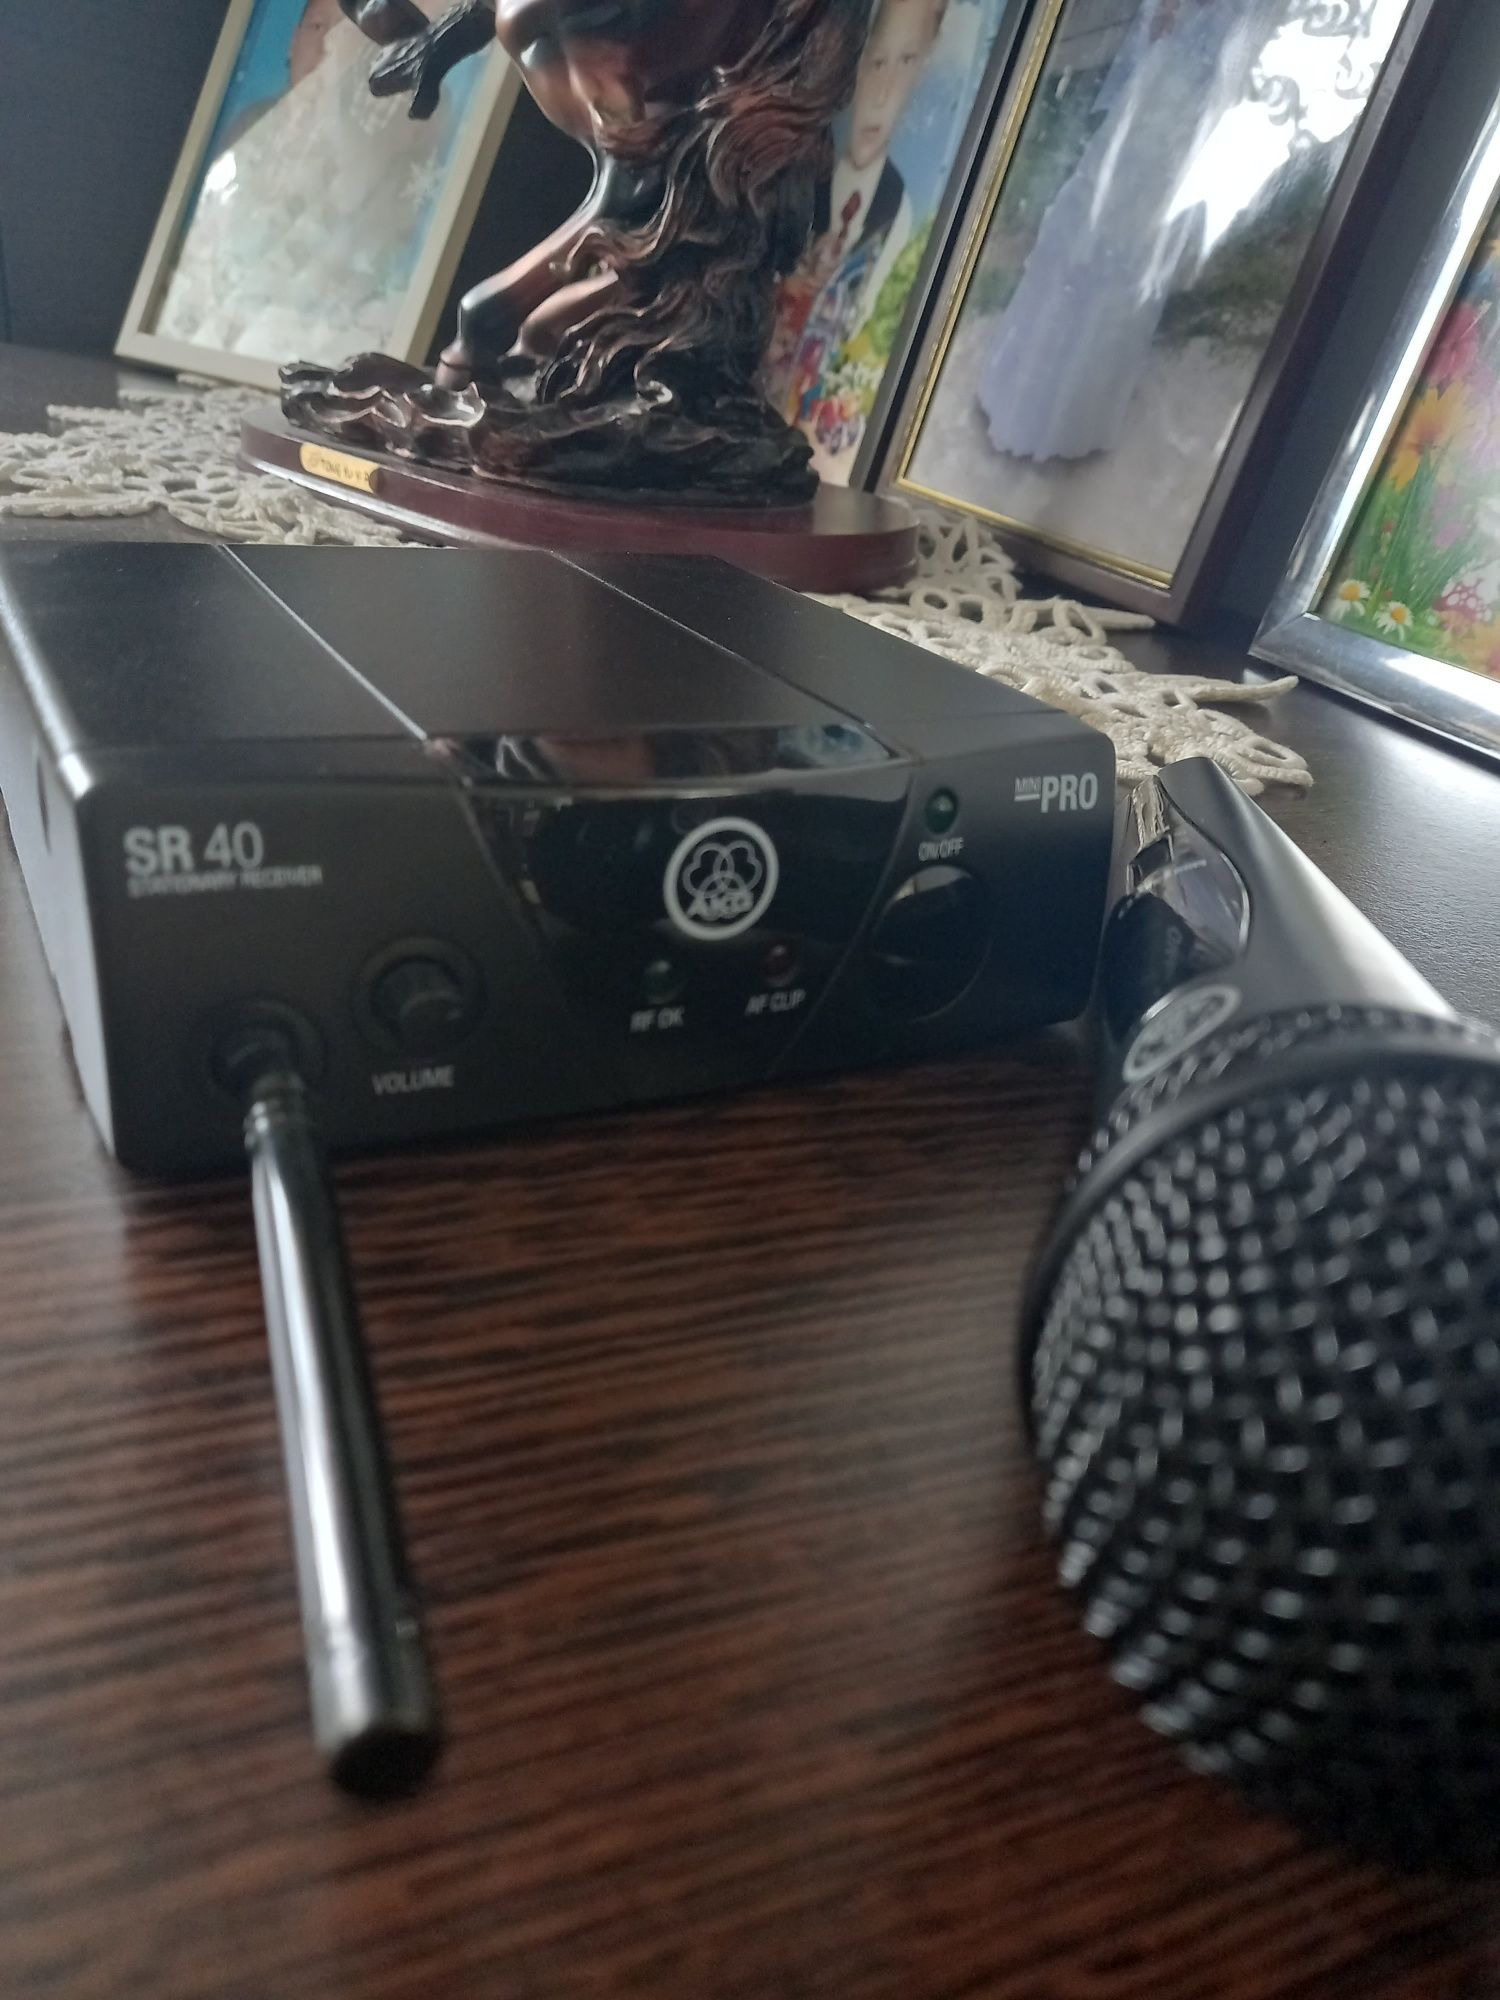 Microfon Akg sr 40 mini pro